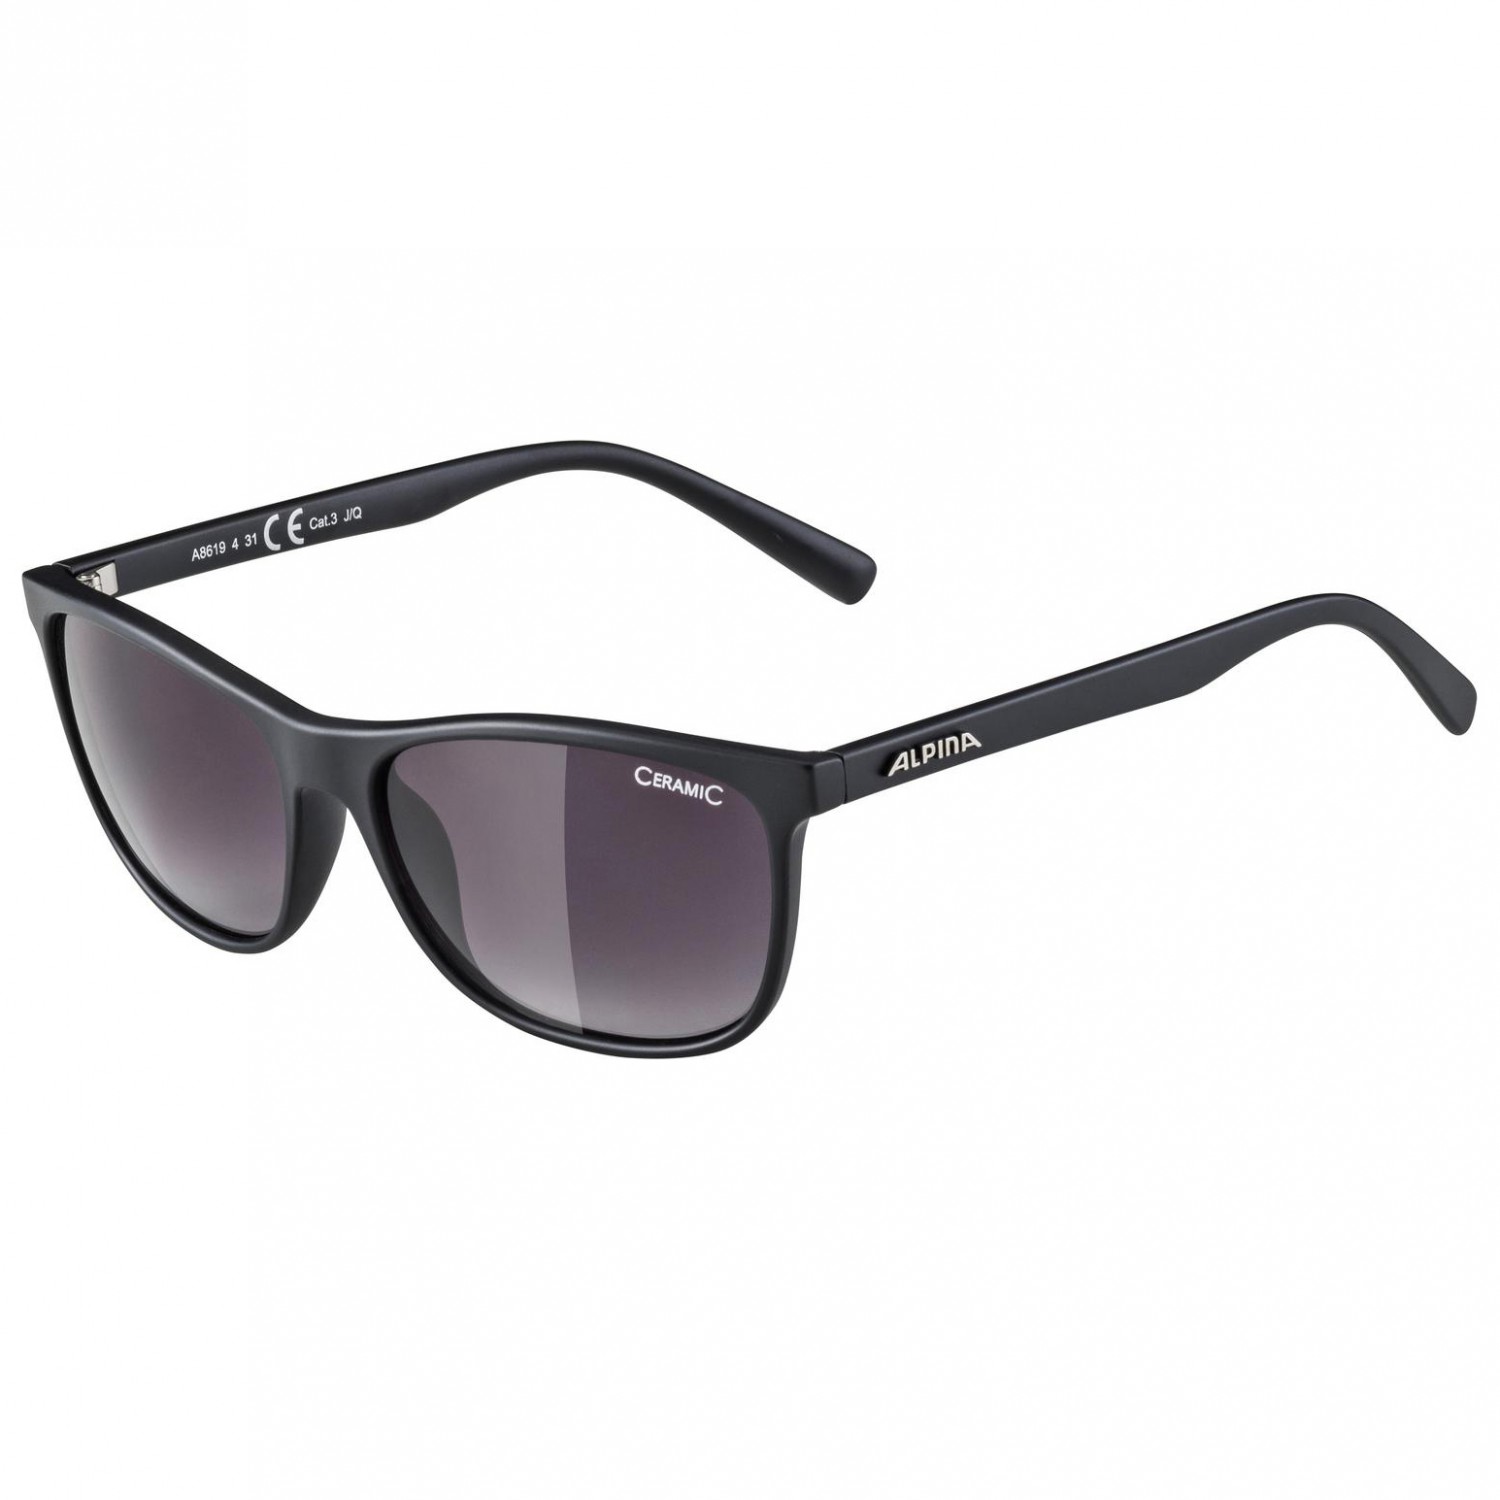 Солнцезащитные очки Alpina Jaida Ceramic S3, цвет Black Matt